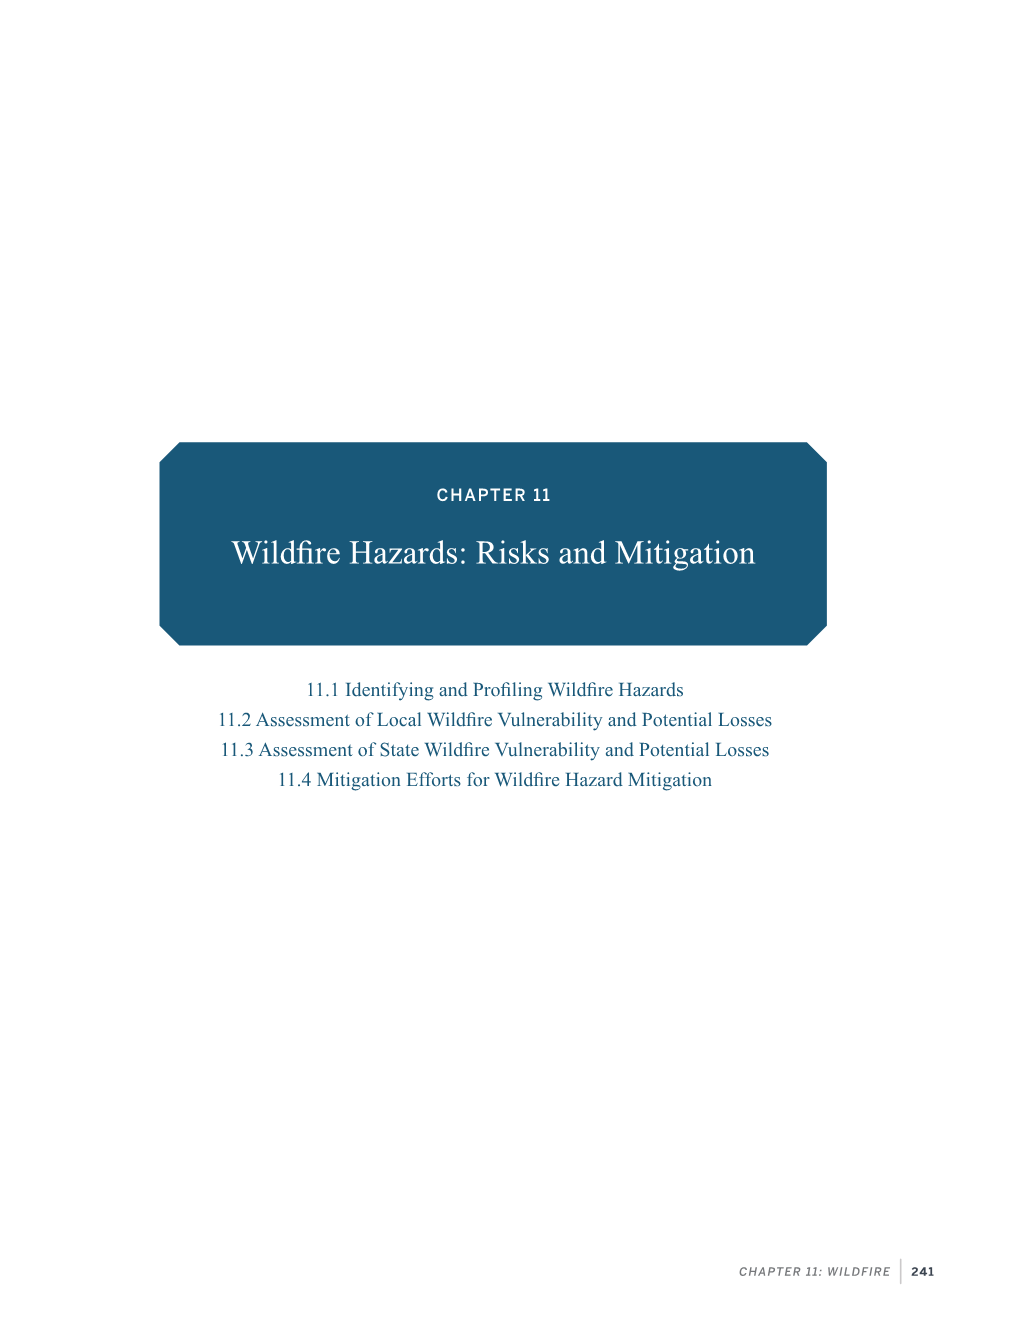 Wildfire Hazards: Risks and Mitigation